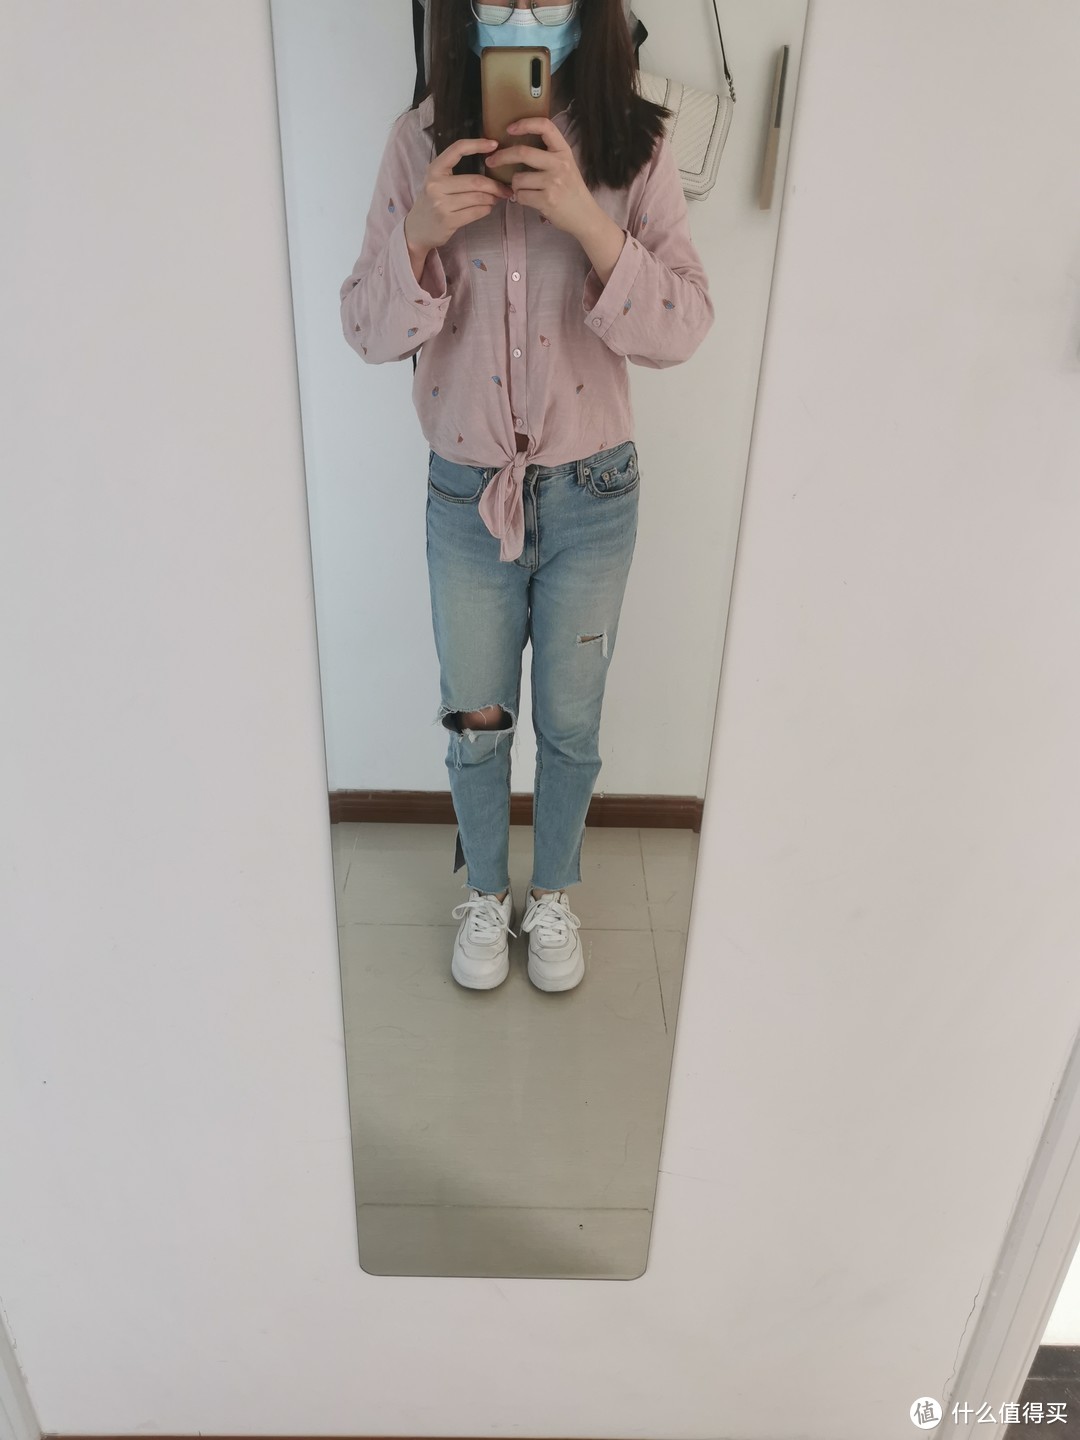 粉色上衣+浅色牛仔裤